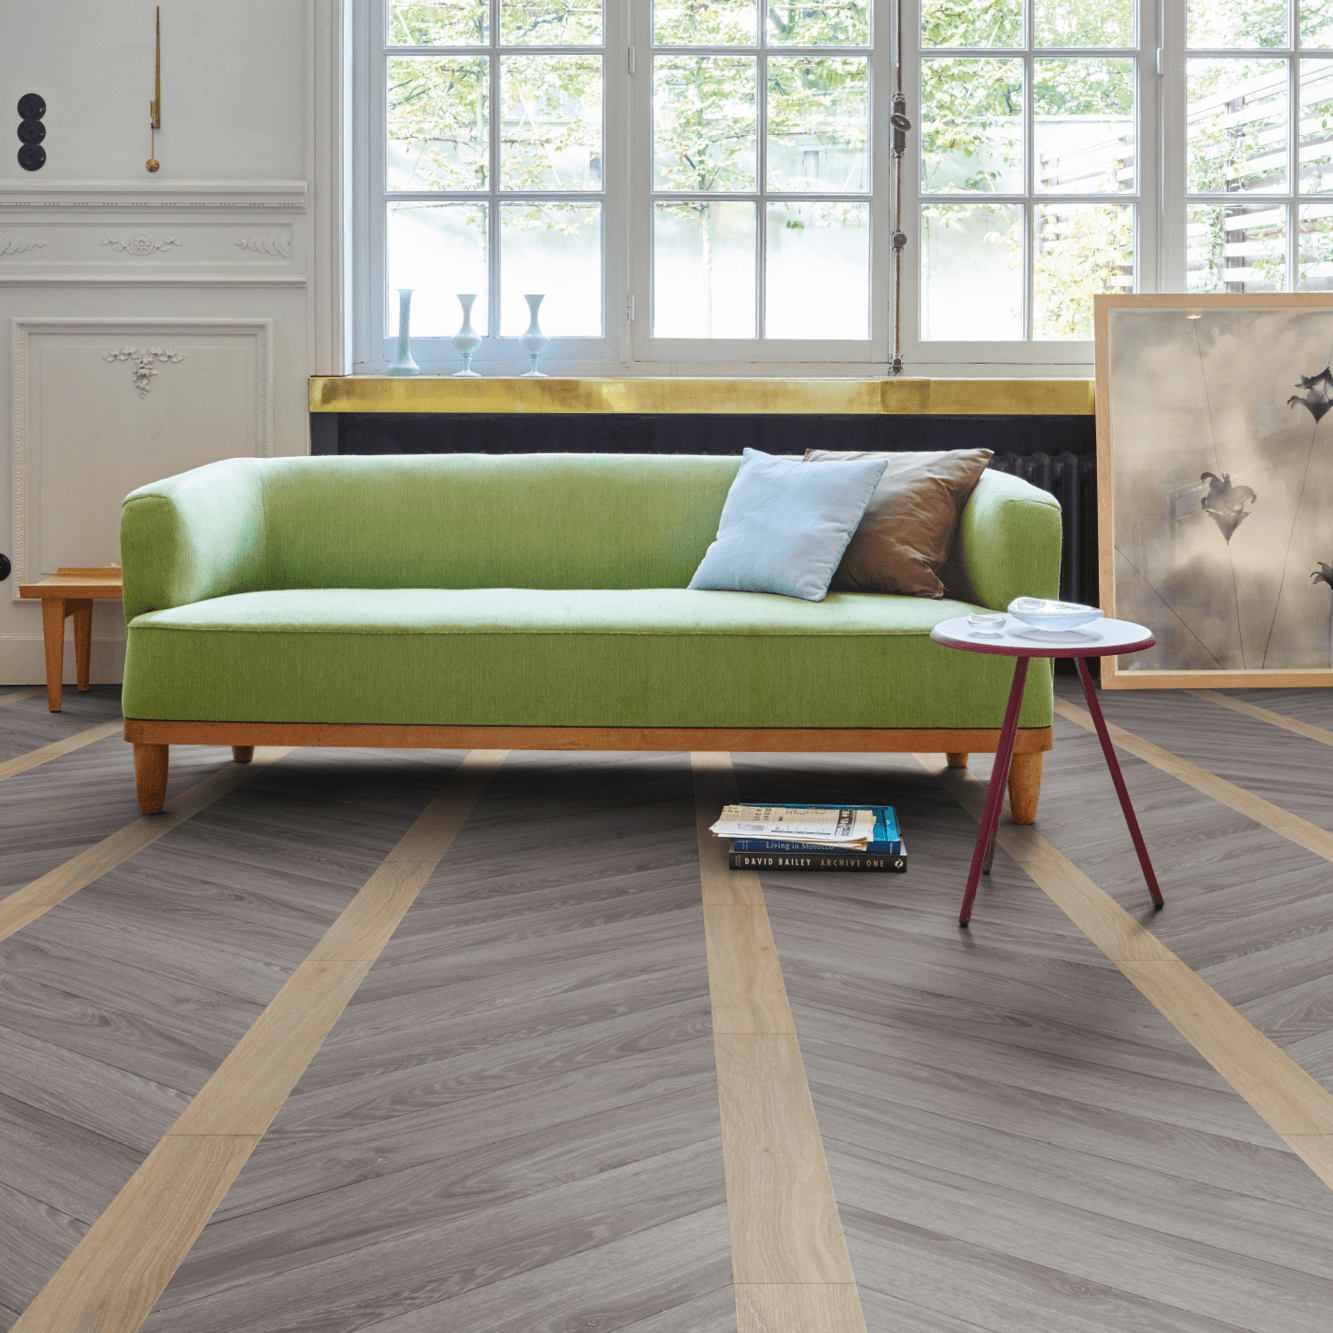 Moduleo - Luxus-Vinylboden - Chevron Geschichte - grünes Sofa auf einem Boden in Holzoptik Chevron Muster